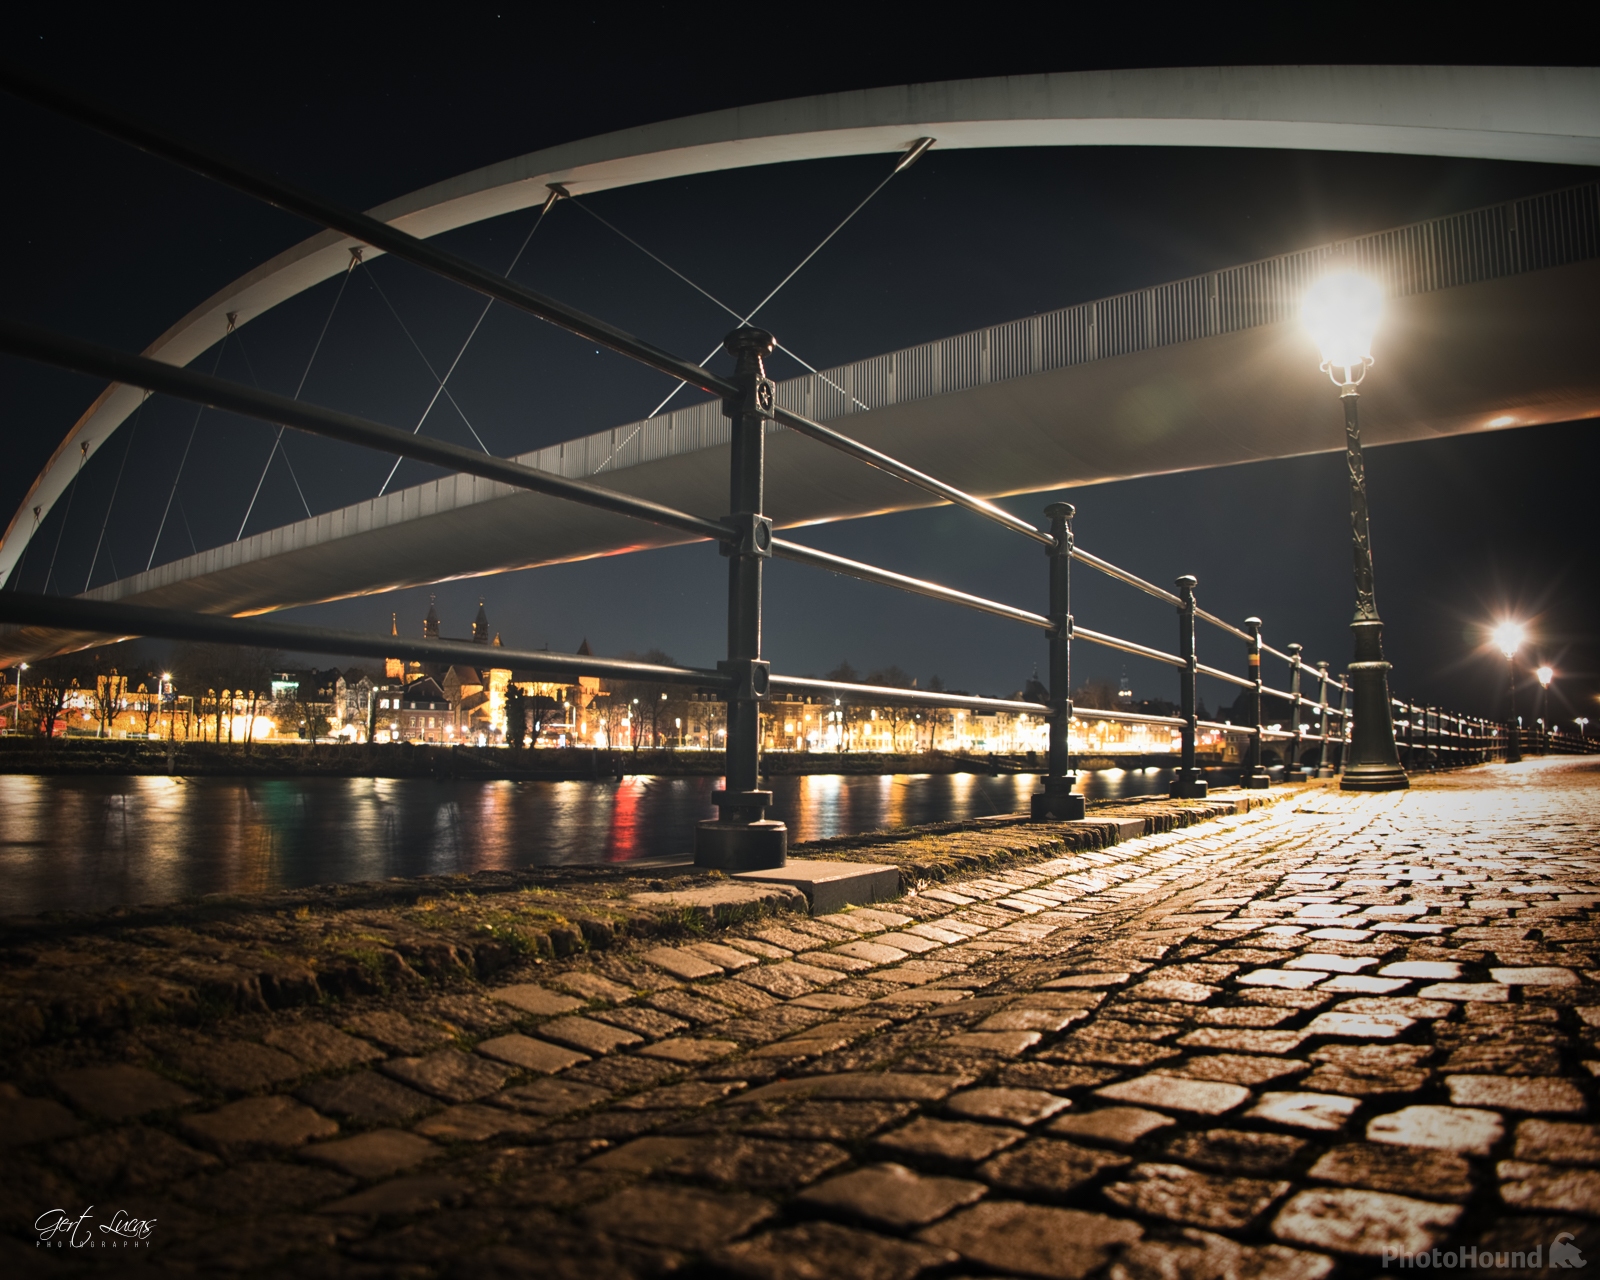 Image of Maastricht Pedestrian Bridge by Gert Lucas